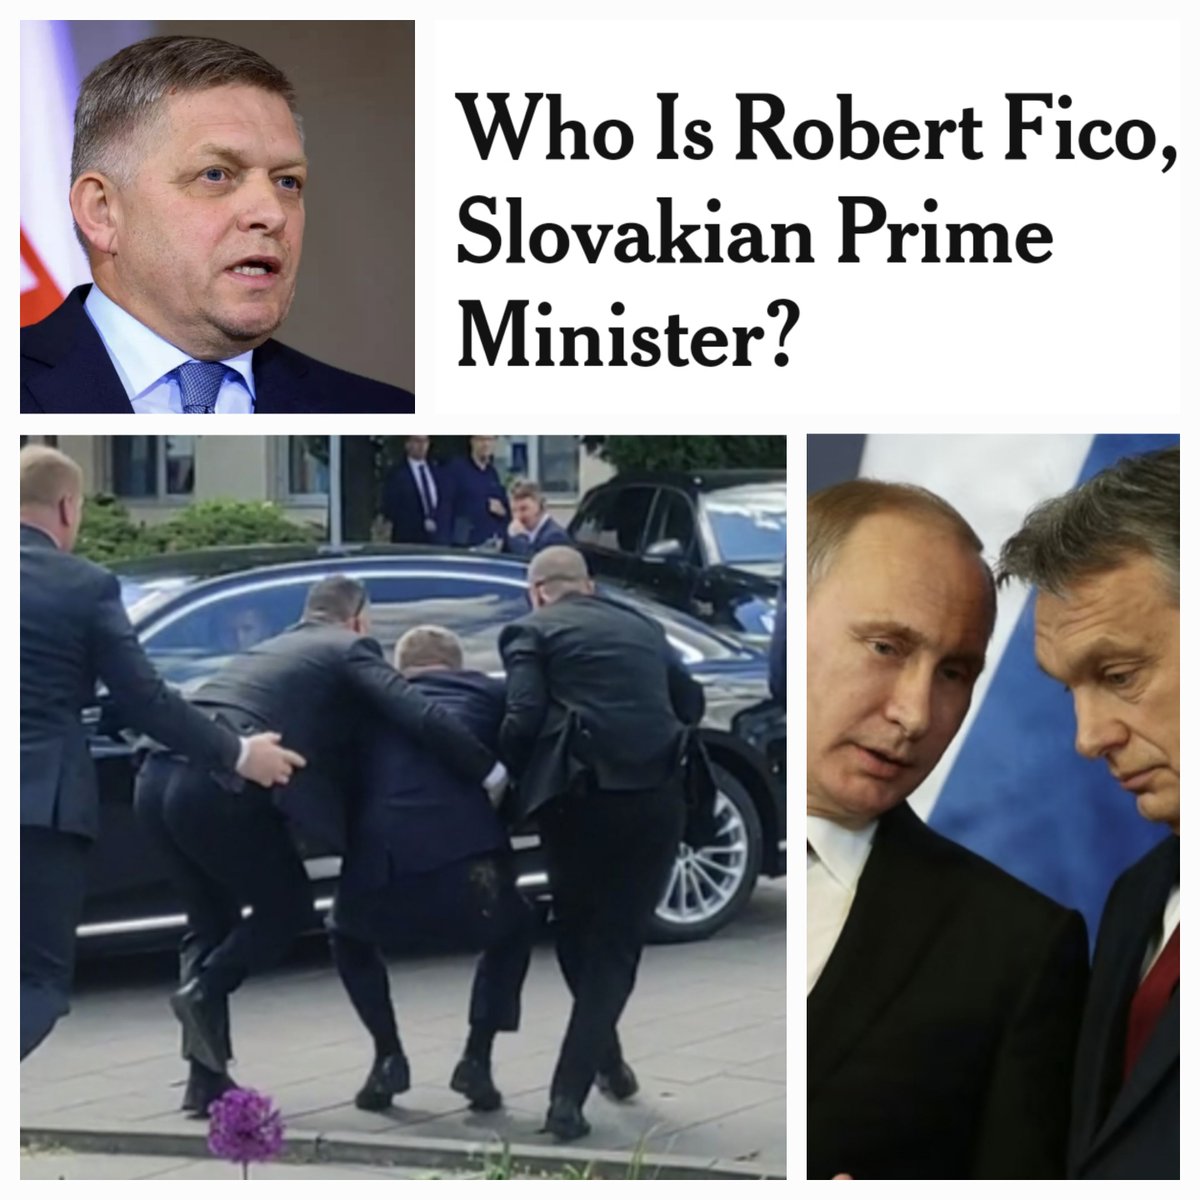 ¿Quién es Robert Fico, el primer ministro de Eslovaquia herido gravemente ayer? ¿Por qué es uno de los políticos más influyentes y polémicos de ese país? Se lo explicamos hoy en @Yestonoestodo. Óiganos aquí: youtube.com/watch?v=VbrhL4…